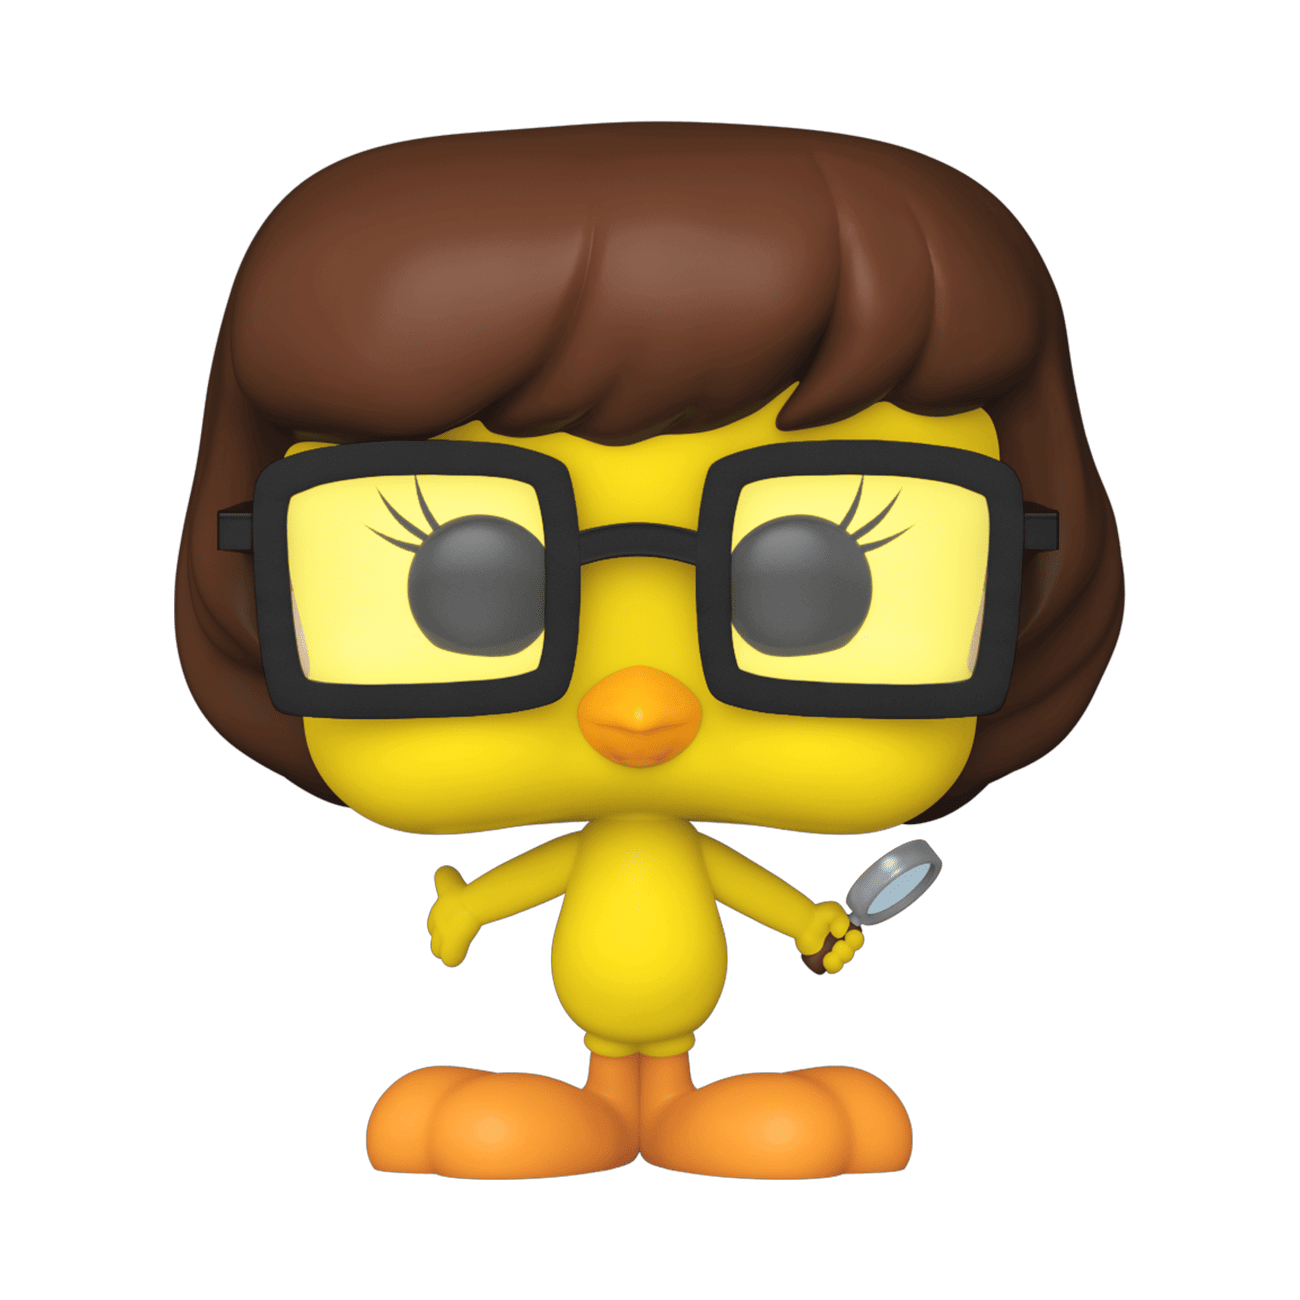 Buy Pop! Tweety Bird as Velma Dinkley at Funko.